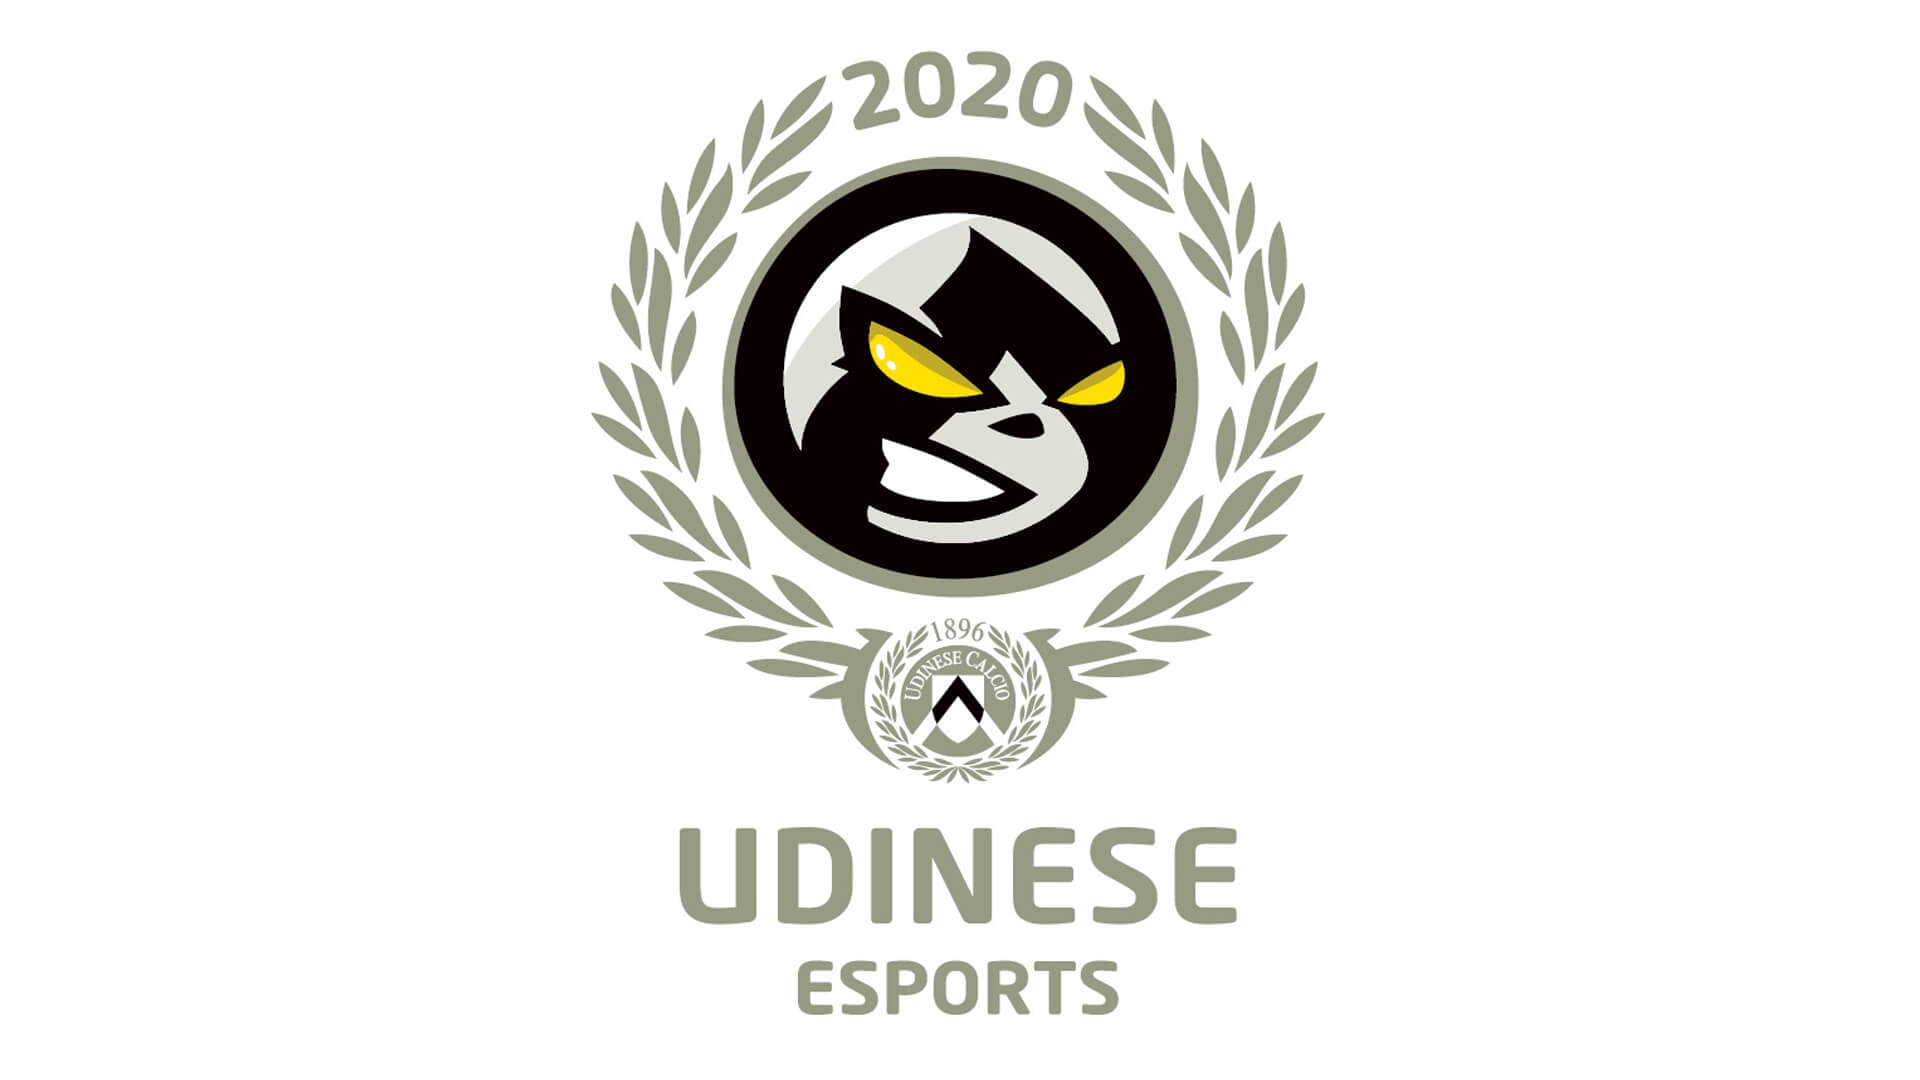 Udinese eSports, BenQ ile ortaklığını duyurdu